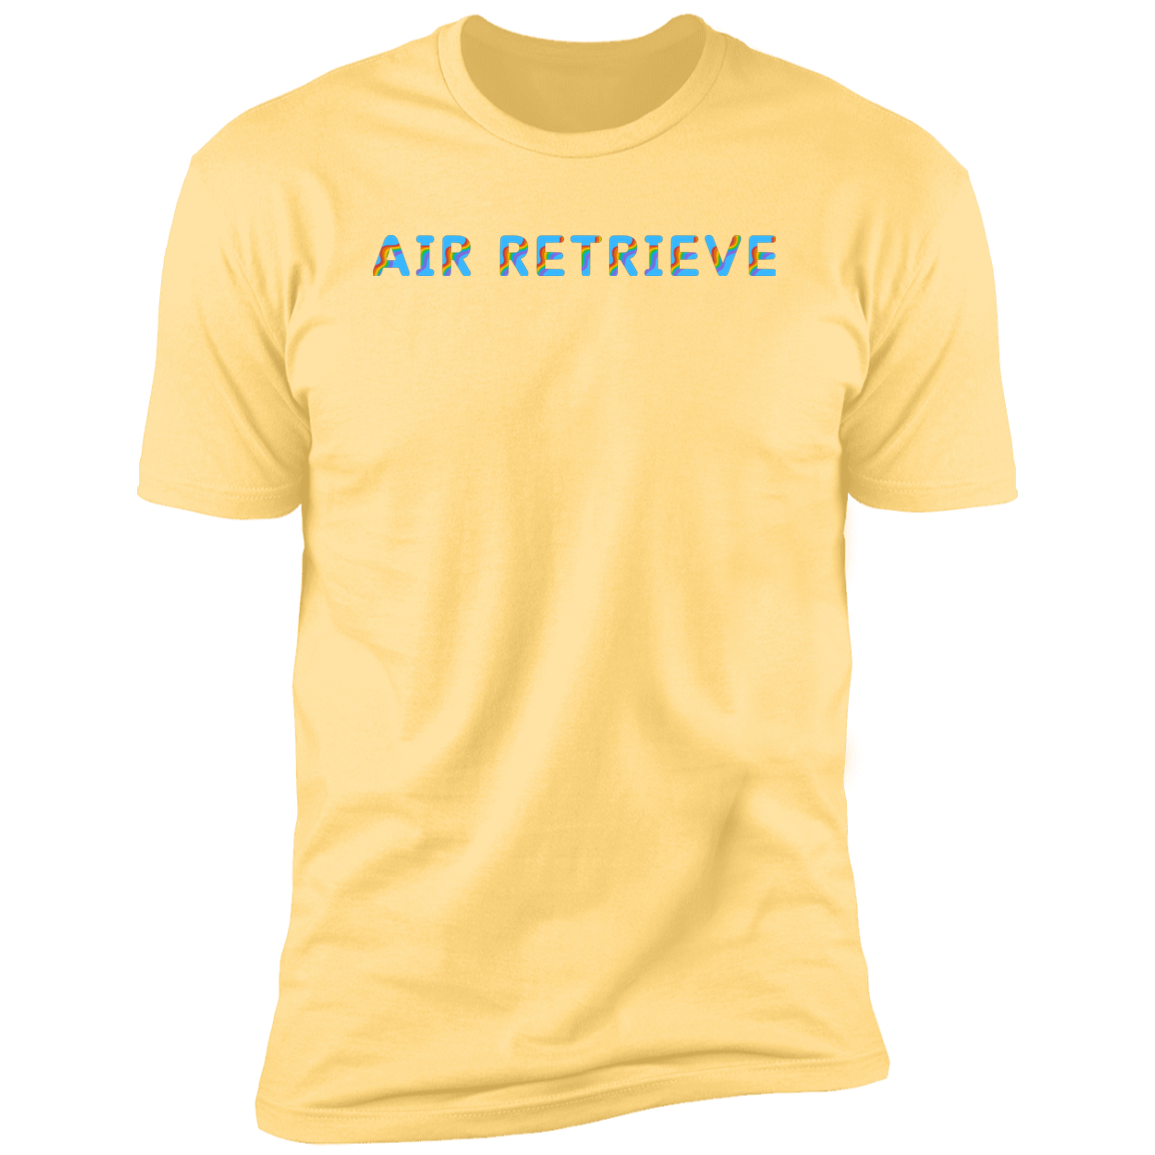 Air Retrieve Pride Dock diving t-shirt, dog pride air retrieve dock diving shirt for humans, in banana cream